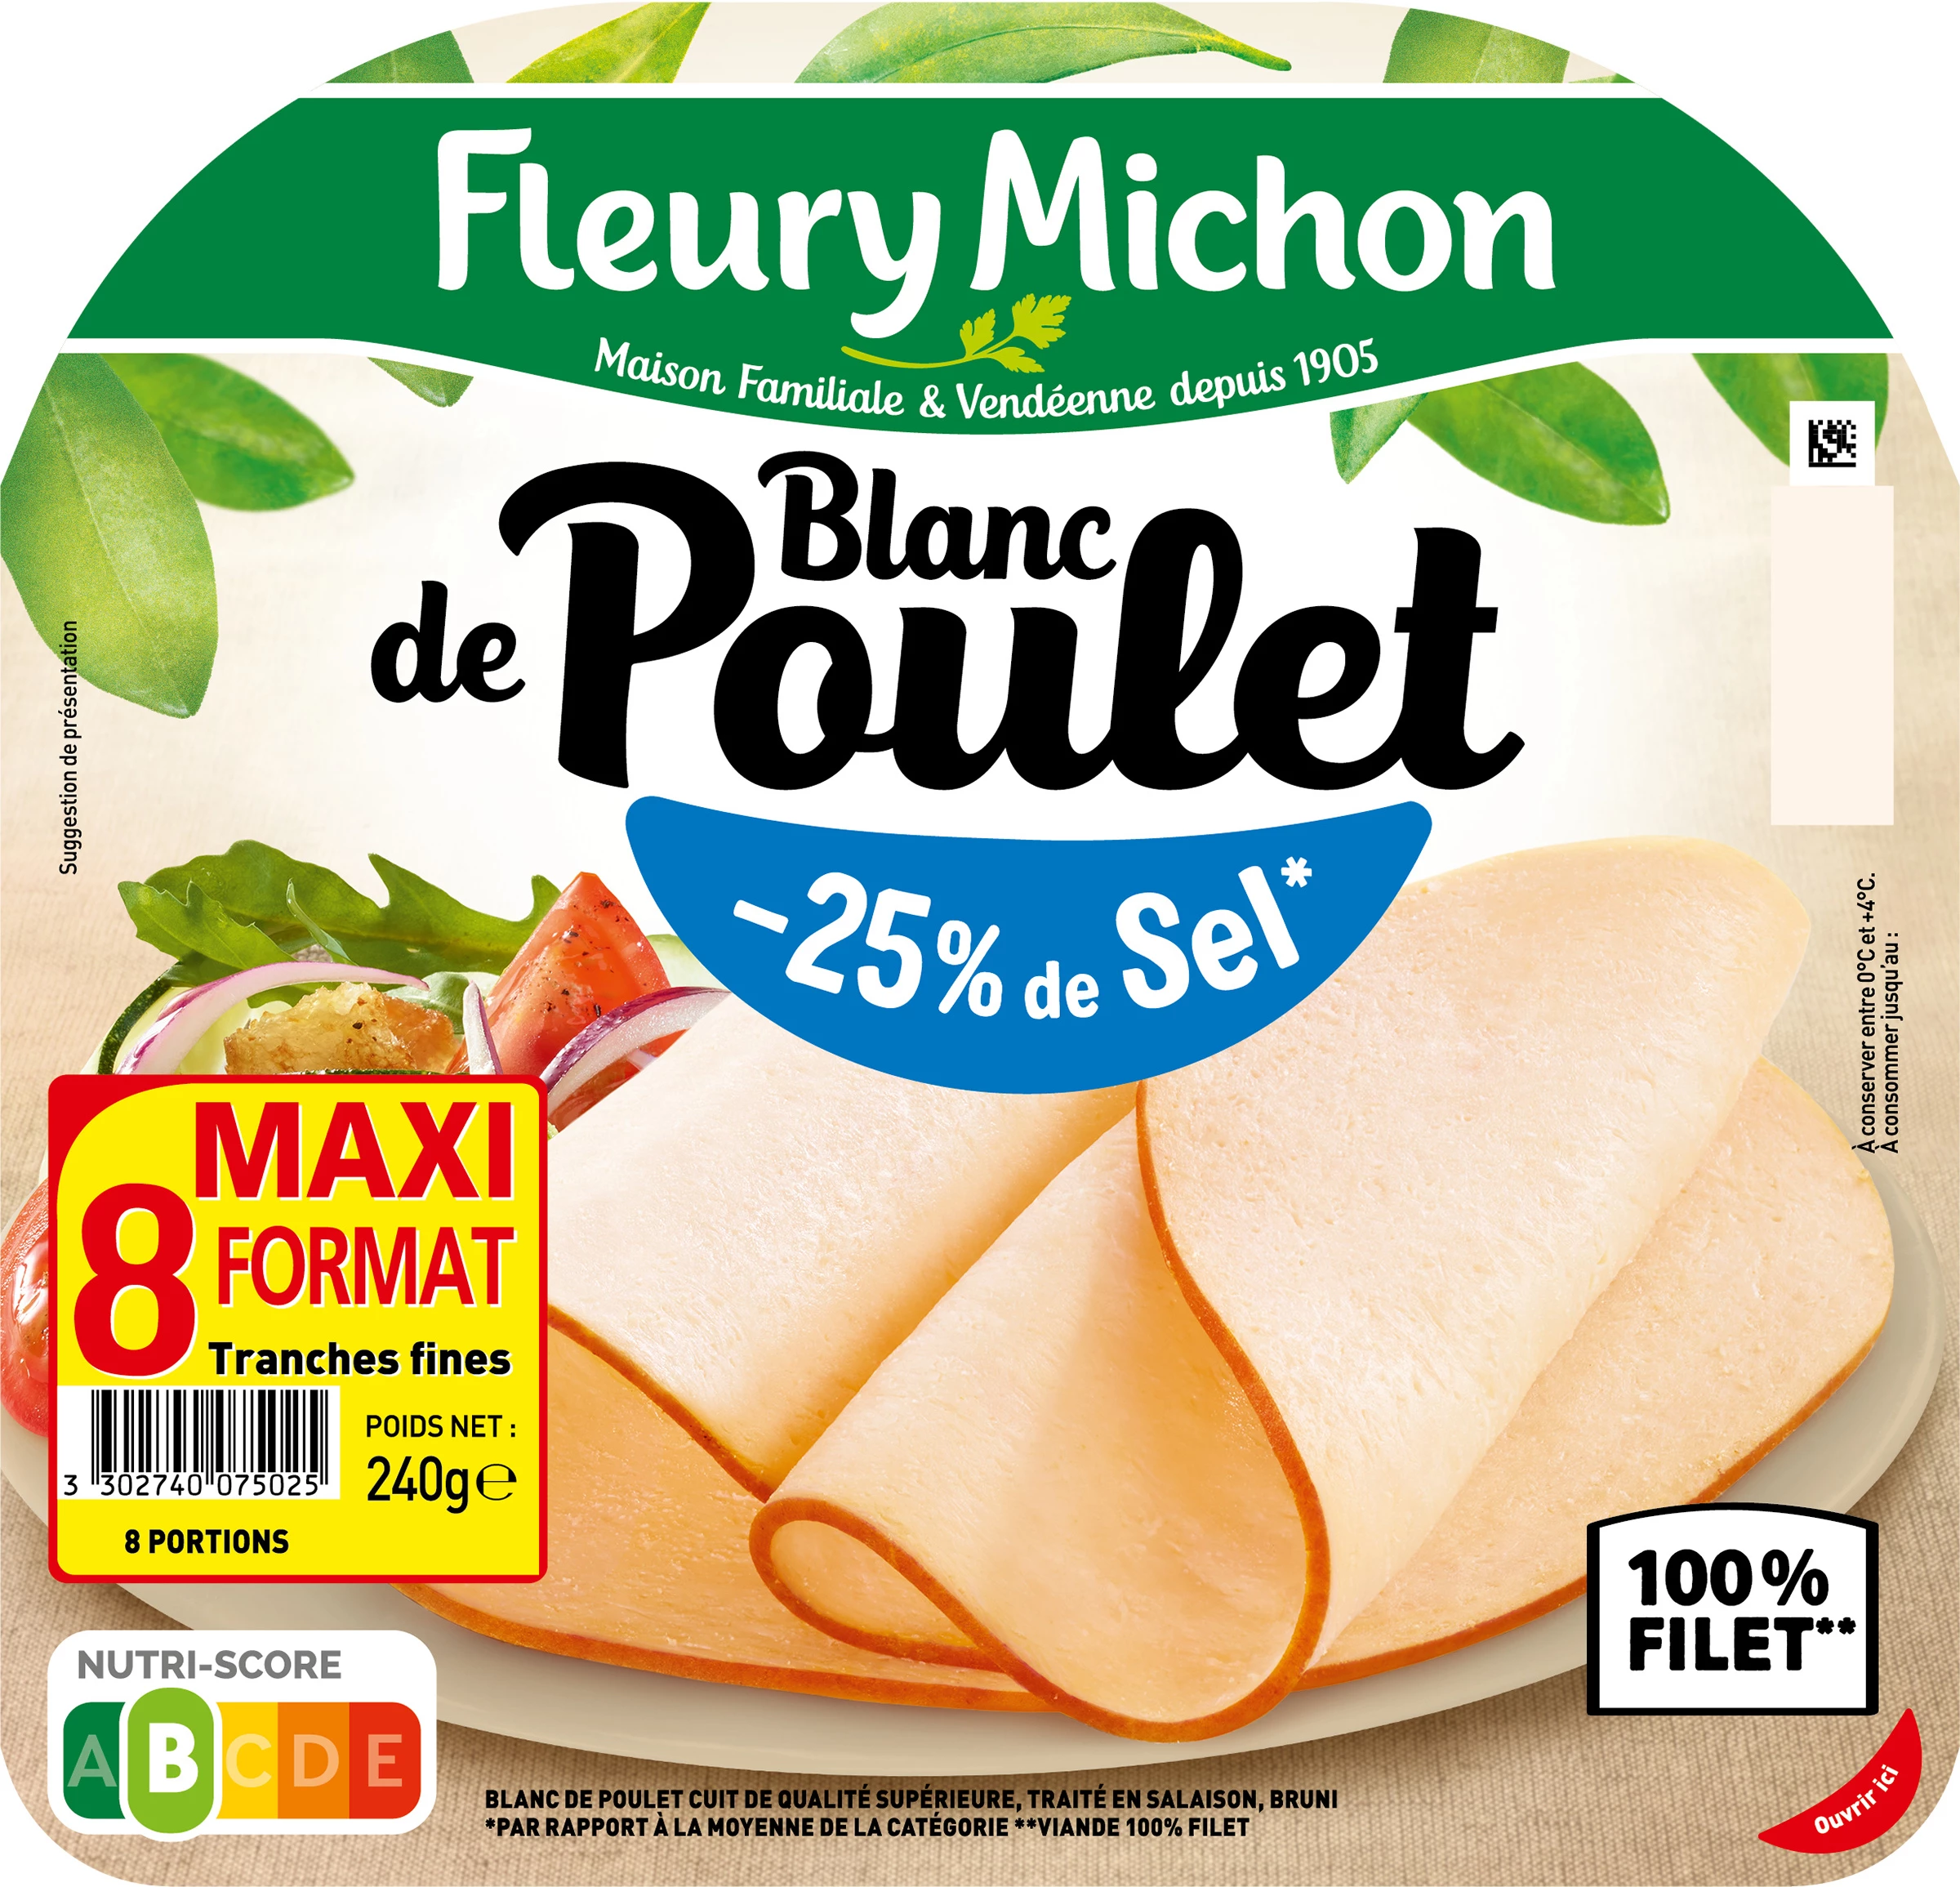 Blanc Poulet -25% de Sel, 8 Tranches 240g - FLEURY MICHON